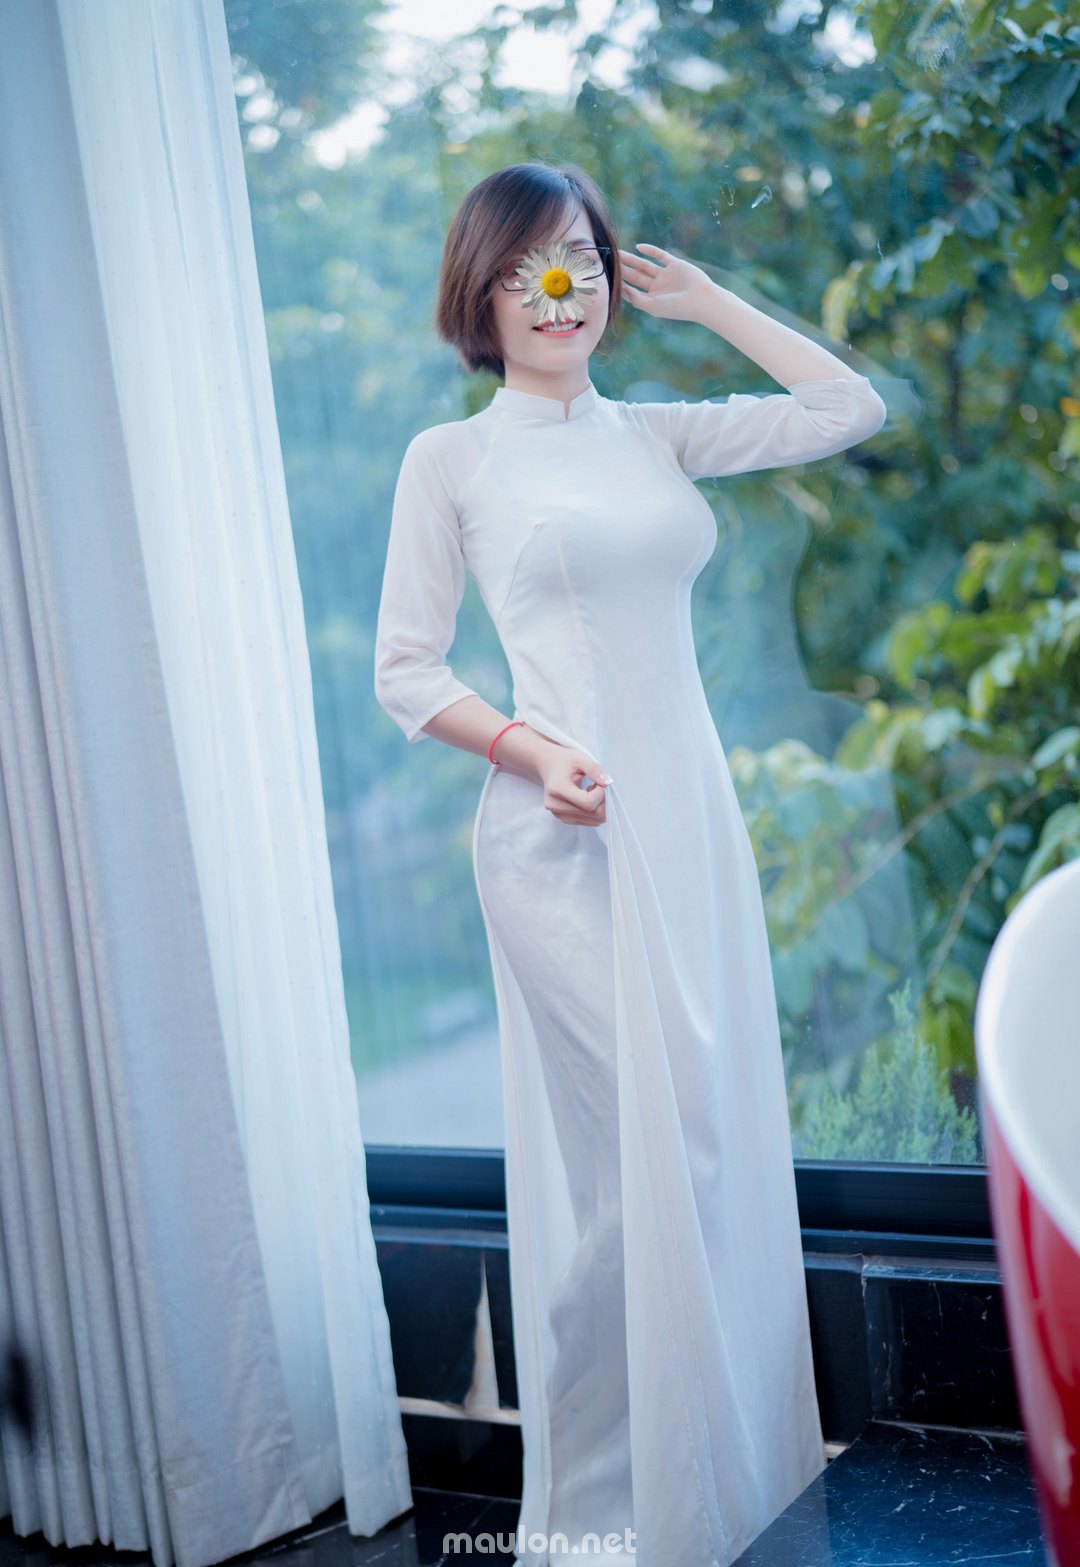 MauLon.Net - Hình ảnh sex của gái xinh Việt Nam trong tà áo dài